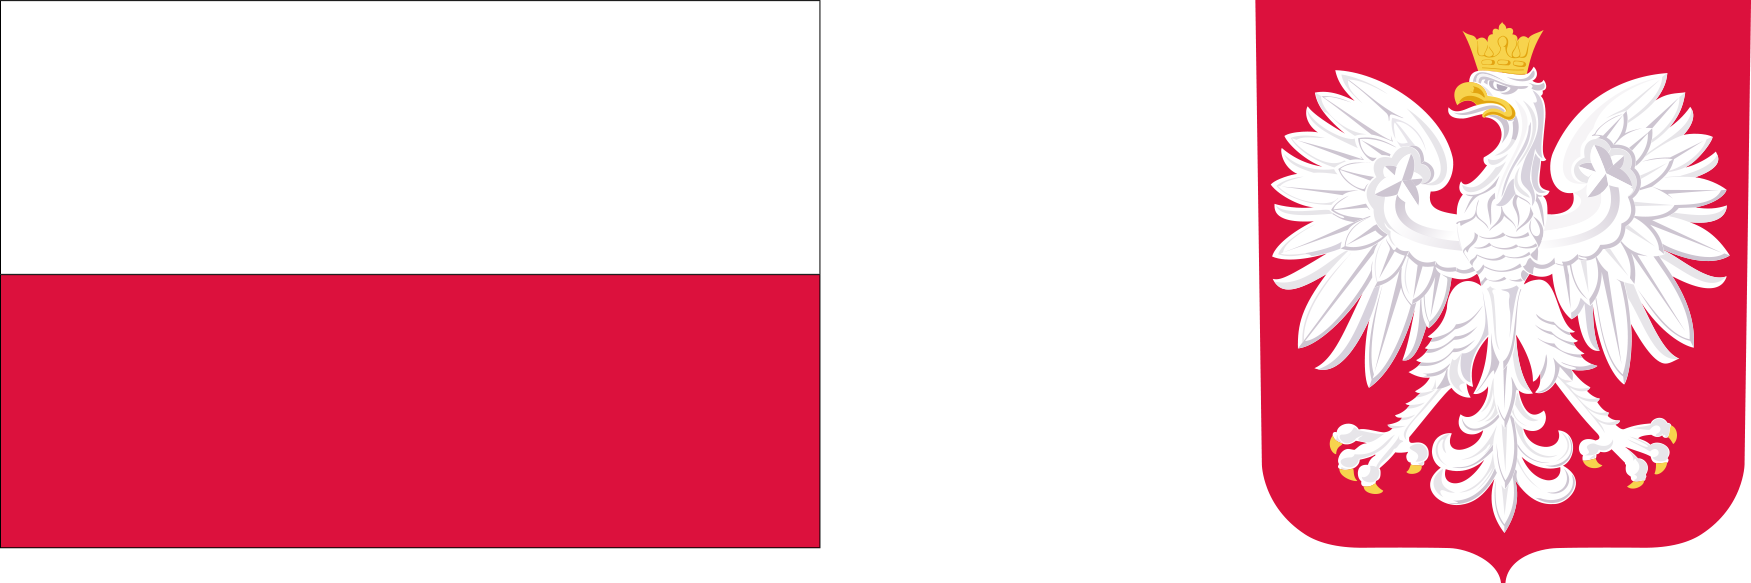 Zdjęcie przedstawiające flagę Państwową Rzeczypospolitej Polskiej, oraz herb Polski